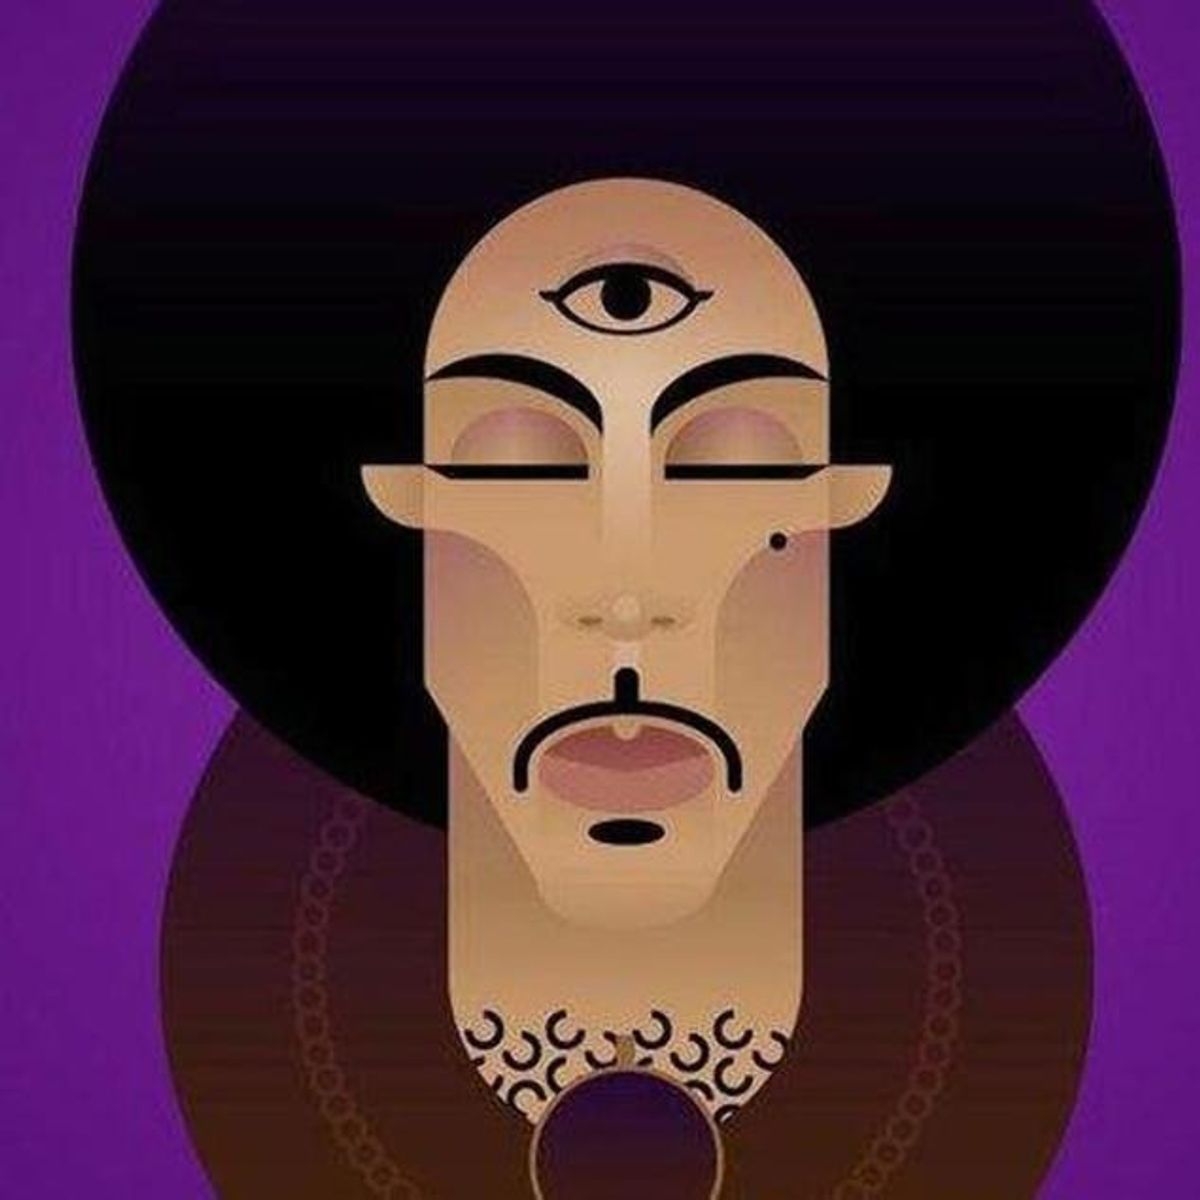 Prince: I'm Still In Denial